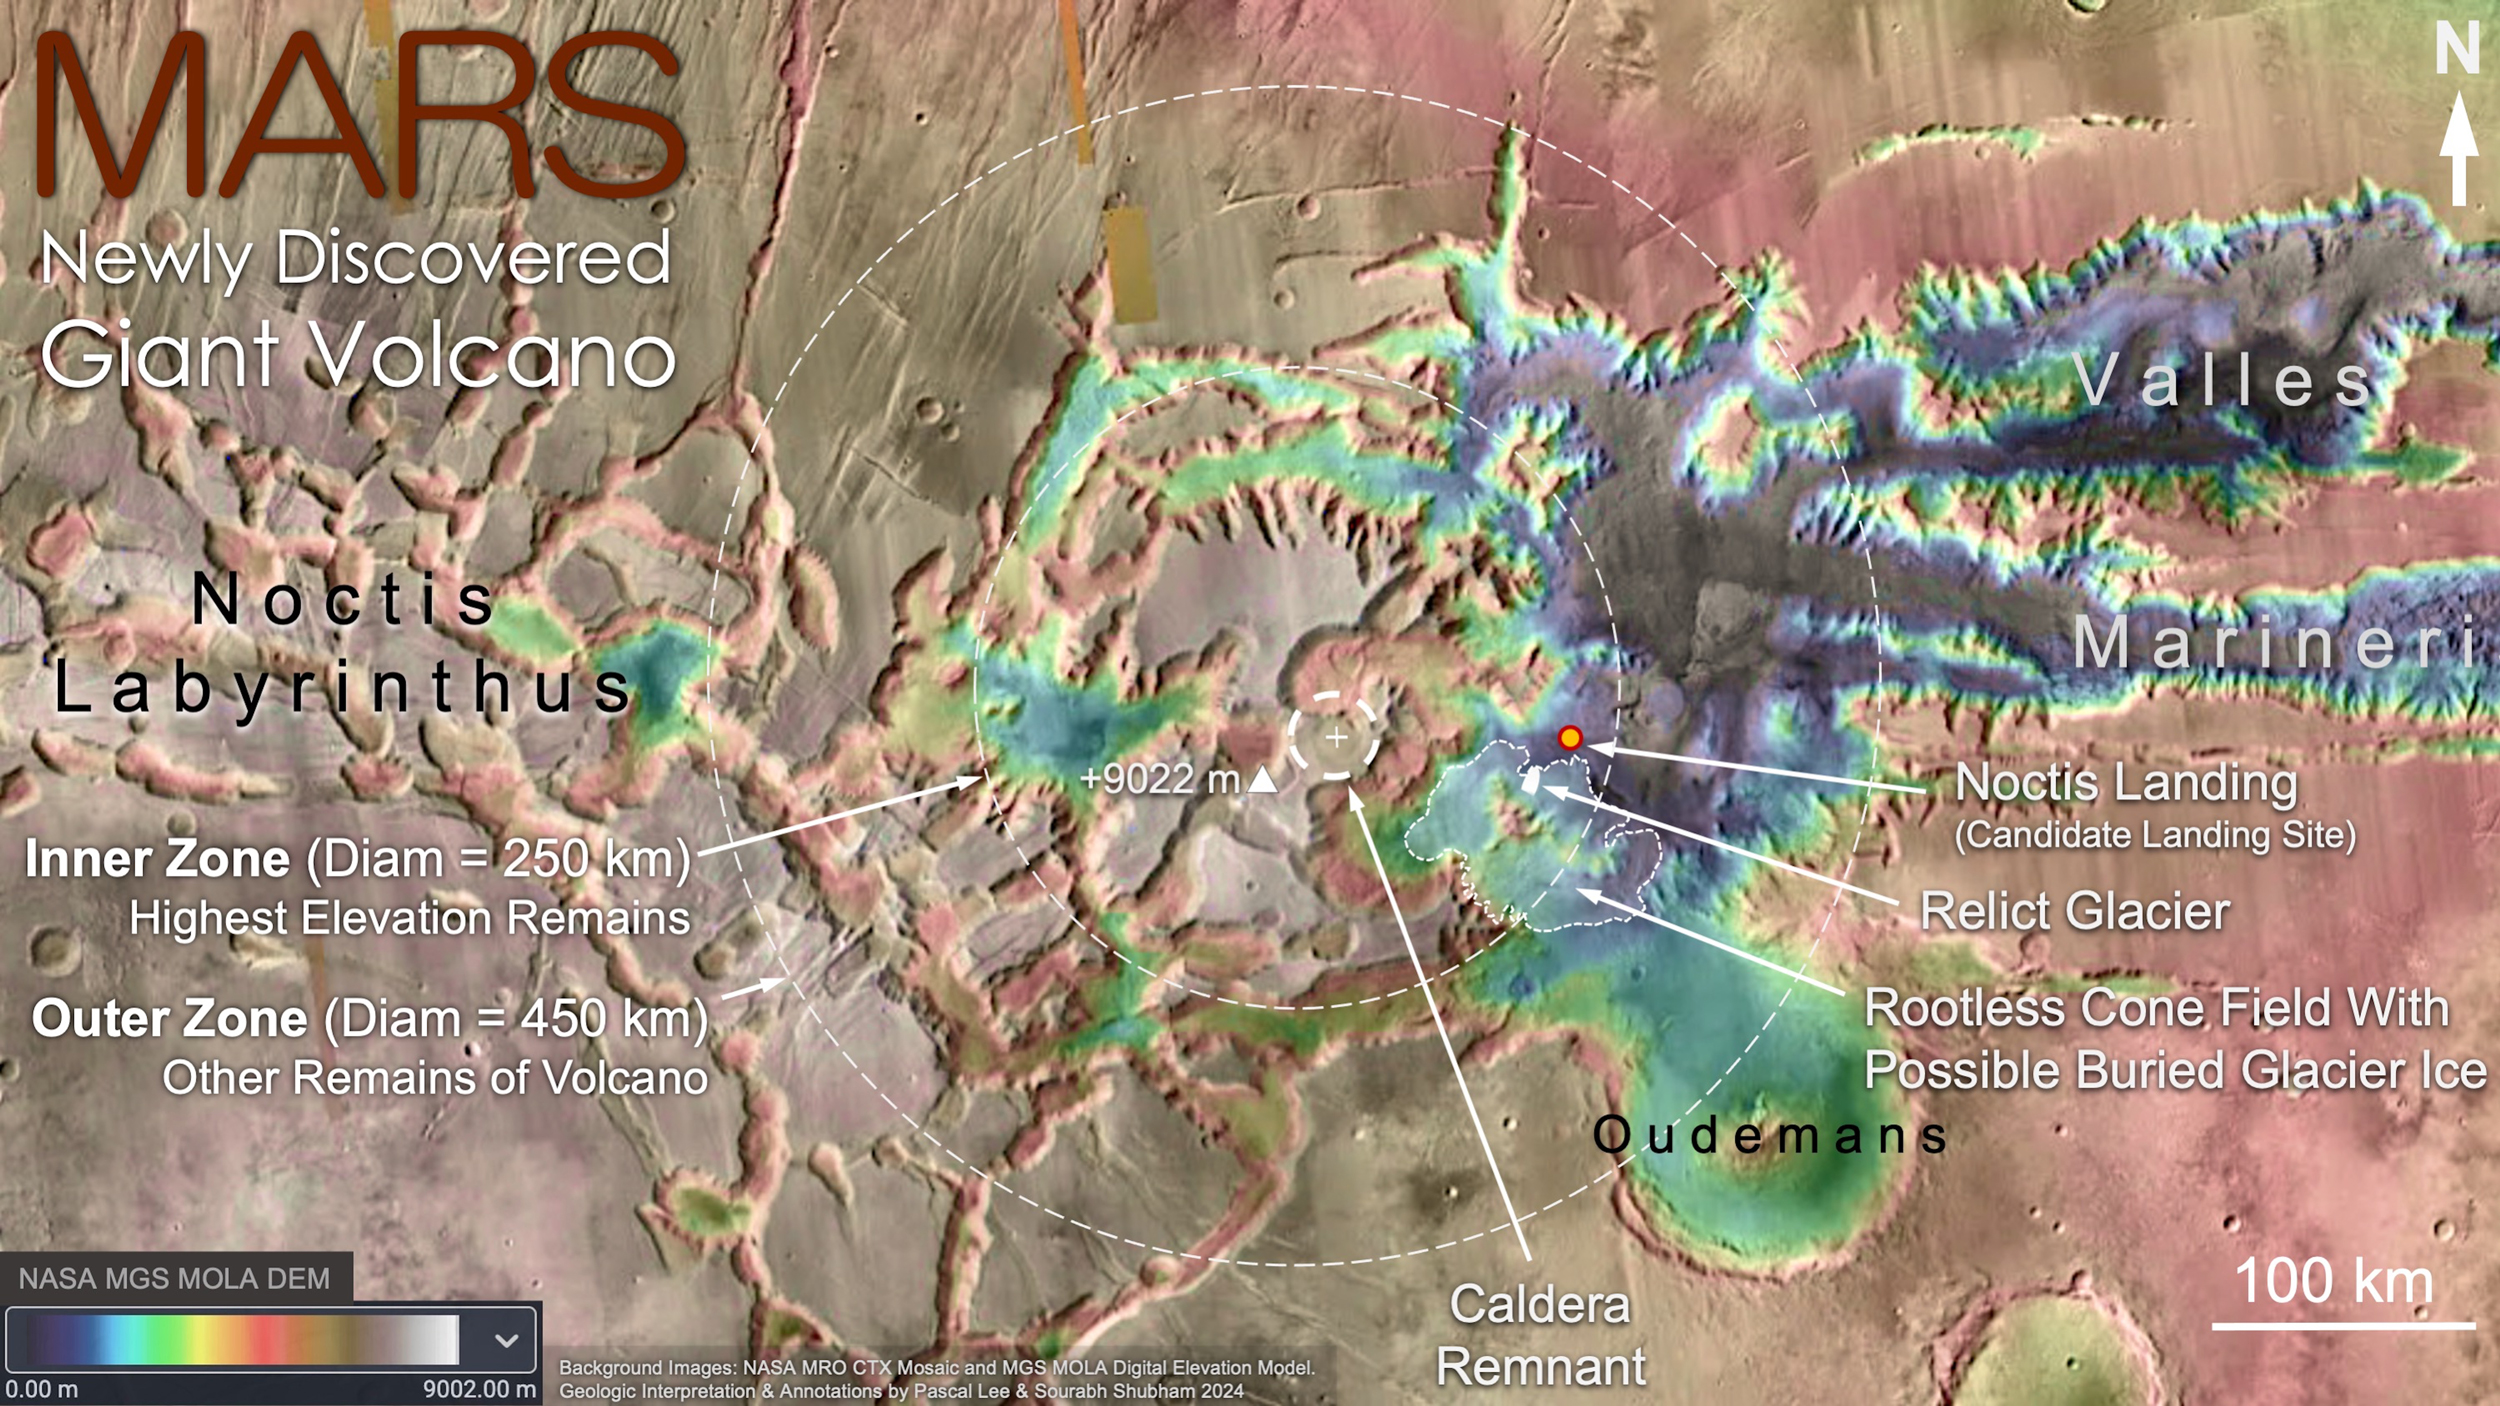 Mapa topográfico centrado en la región del recién descubierto Noctis Volcano a falso color.